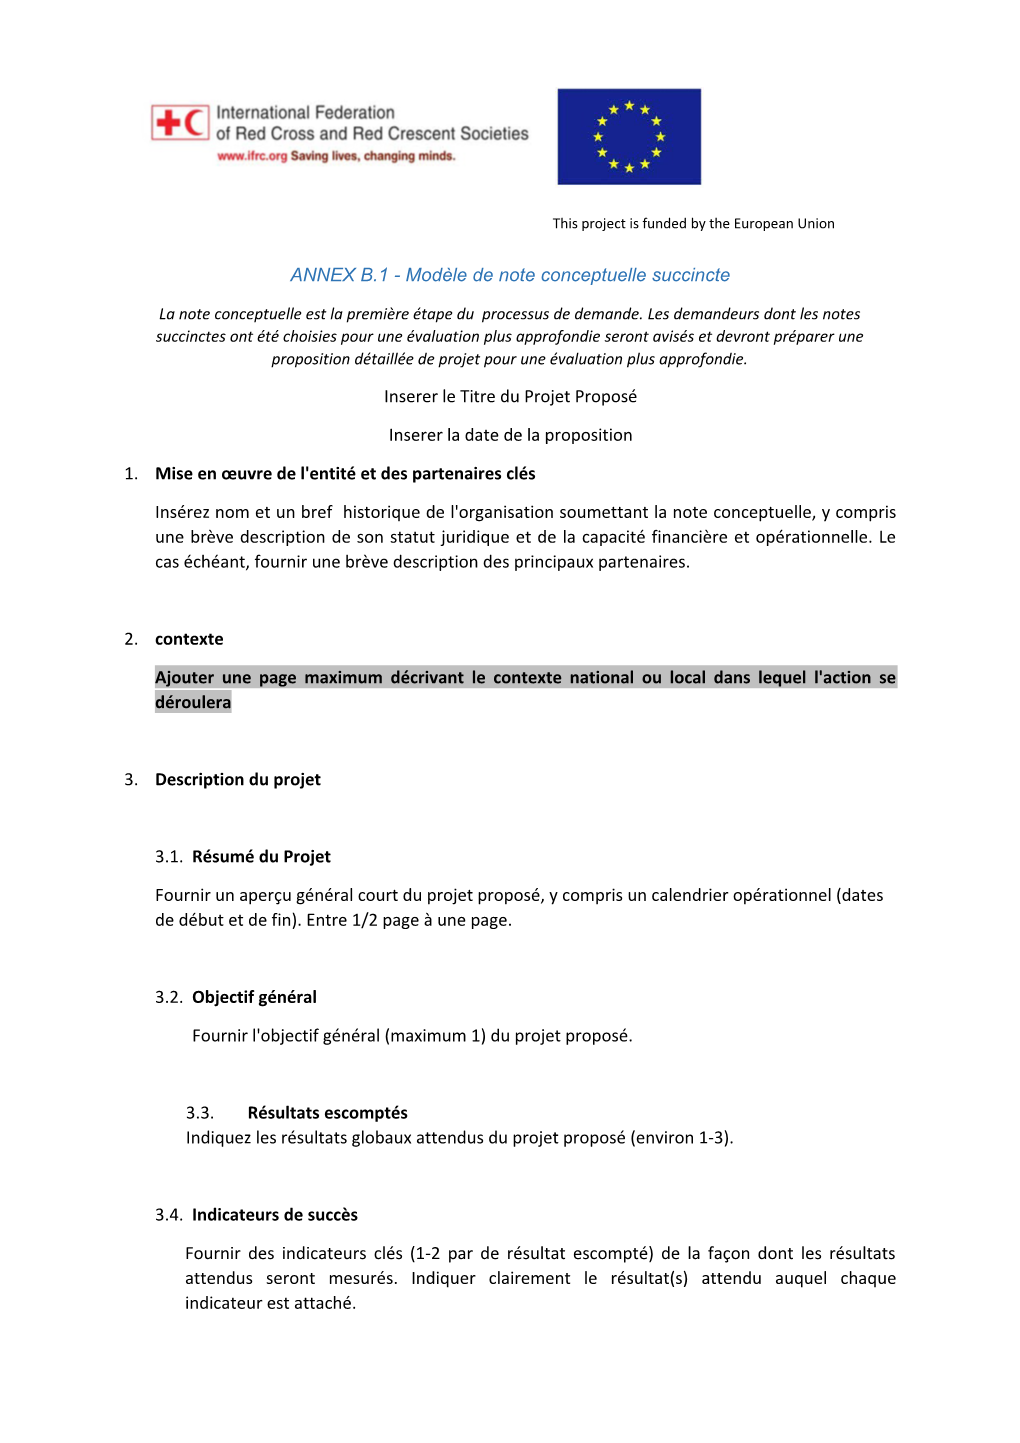 ANNEX B.1 - Modèle De Note Conceptuelle Succincte